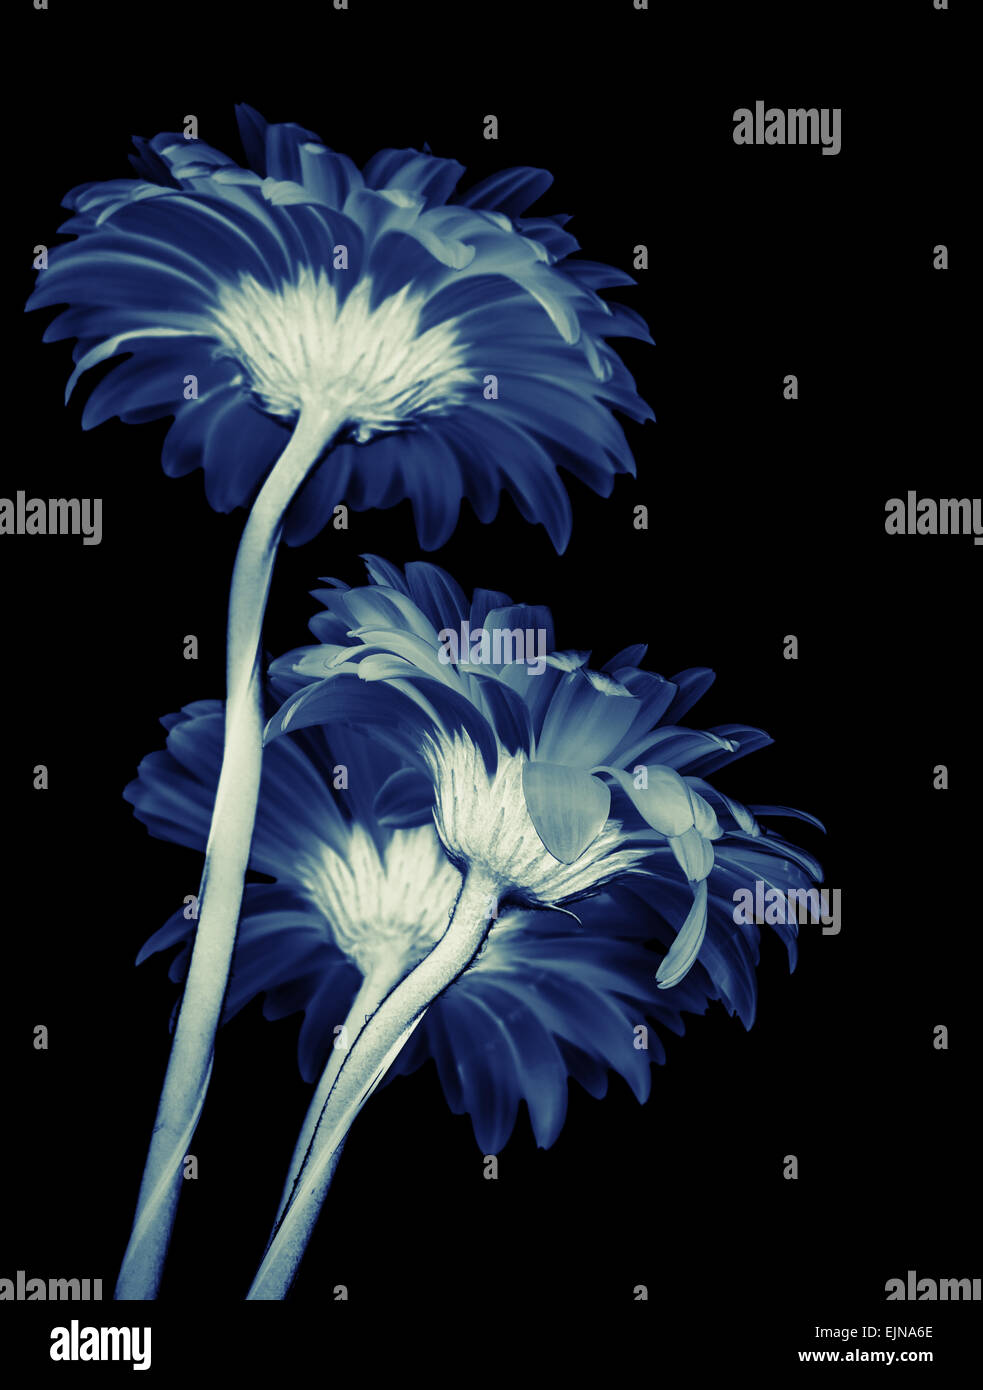 Gerbera flowers isolated on black background, blue toned stylized macro photo with shallow DOF Stock Photo